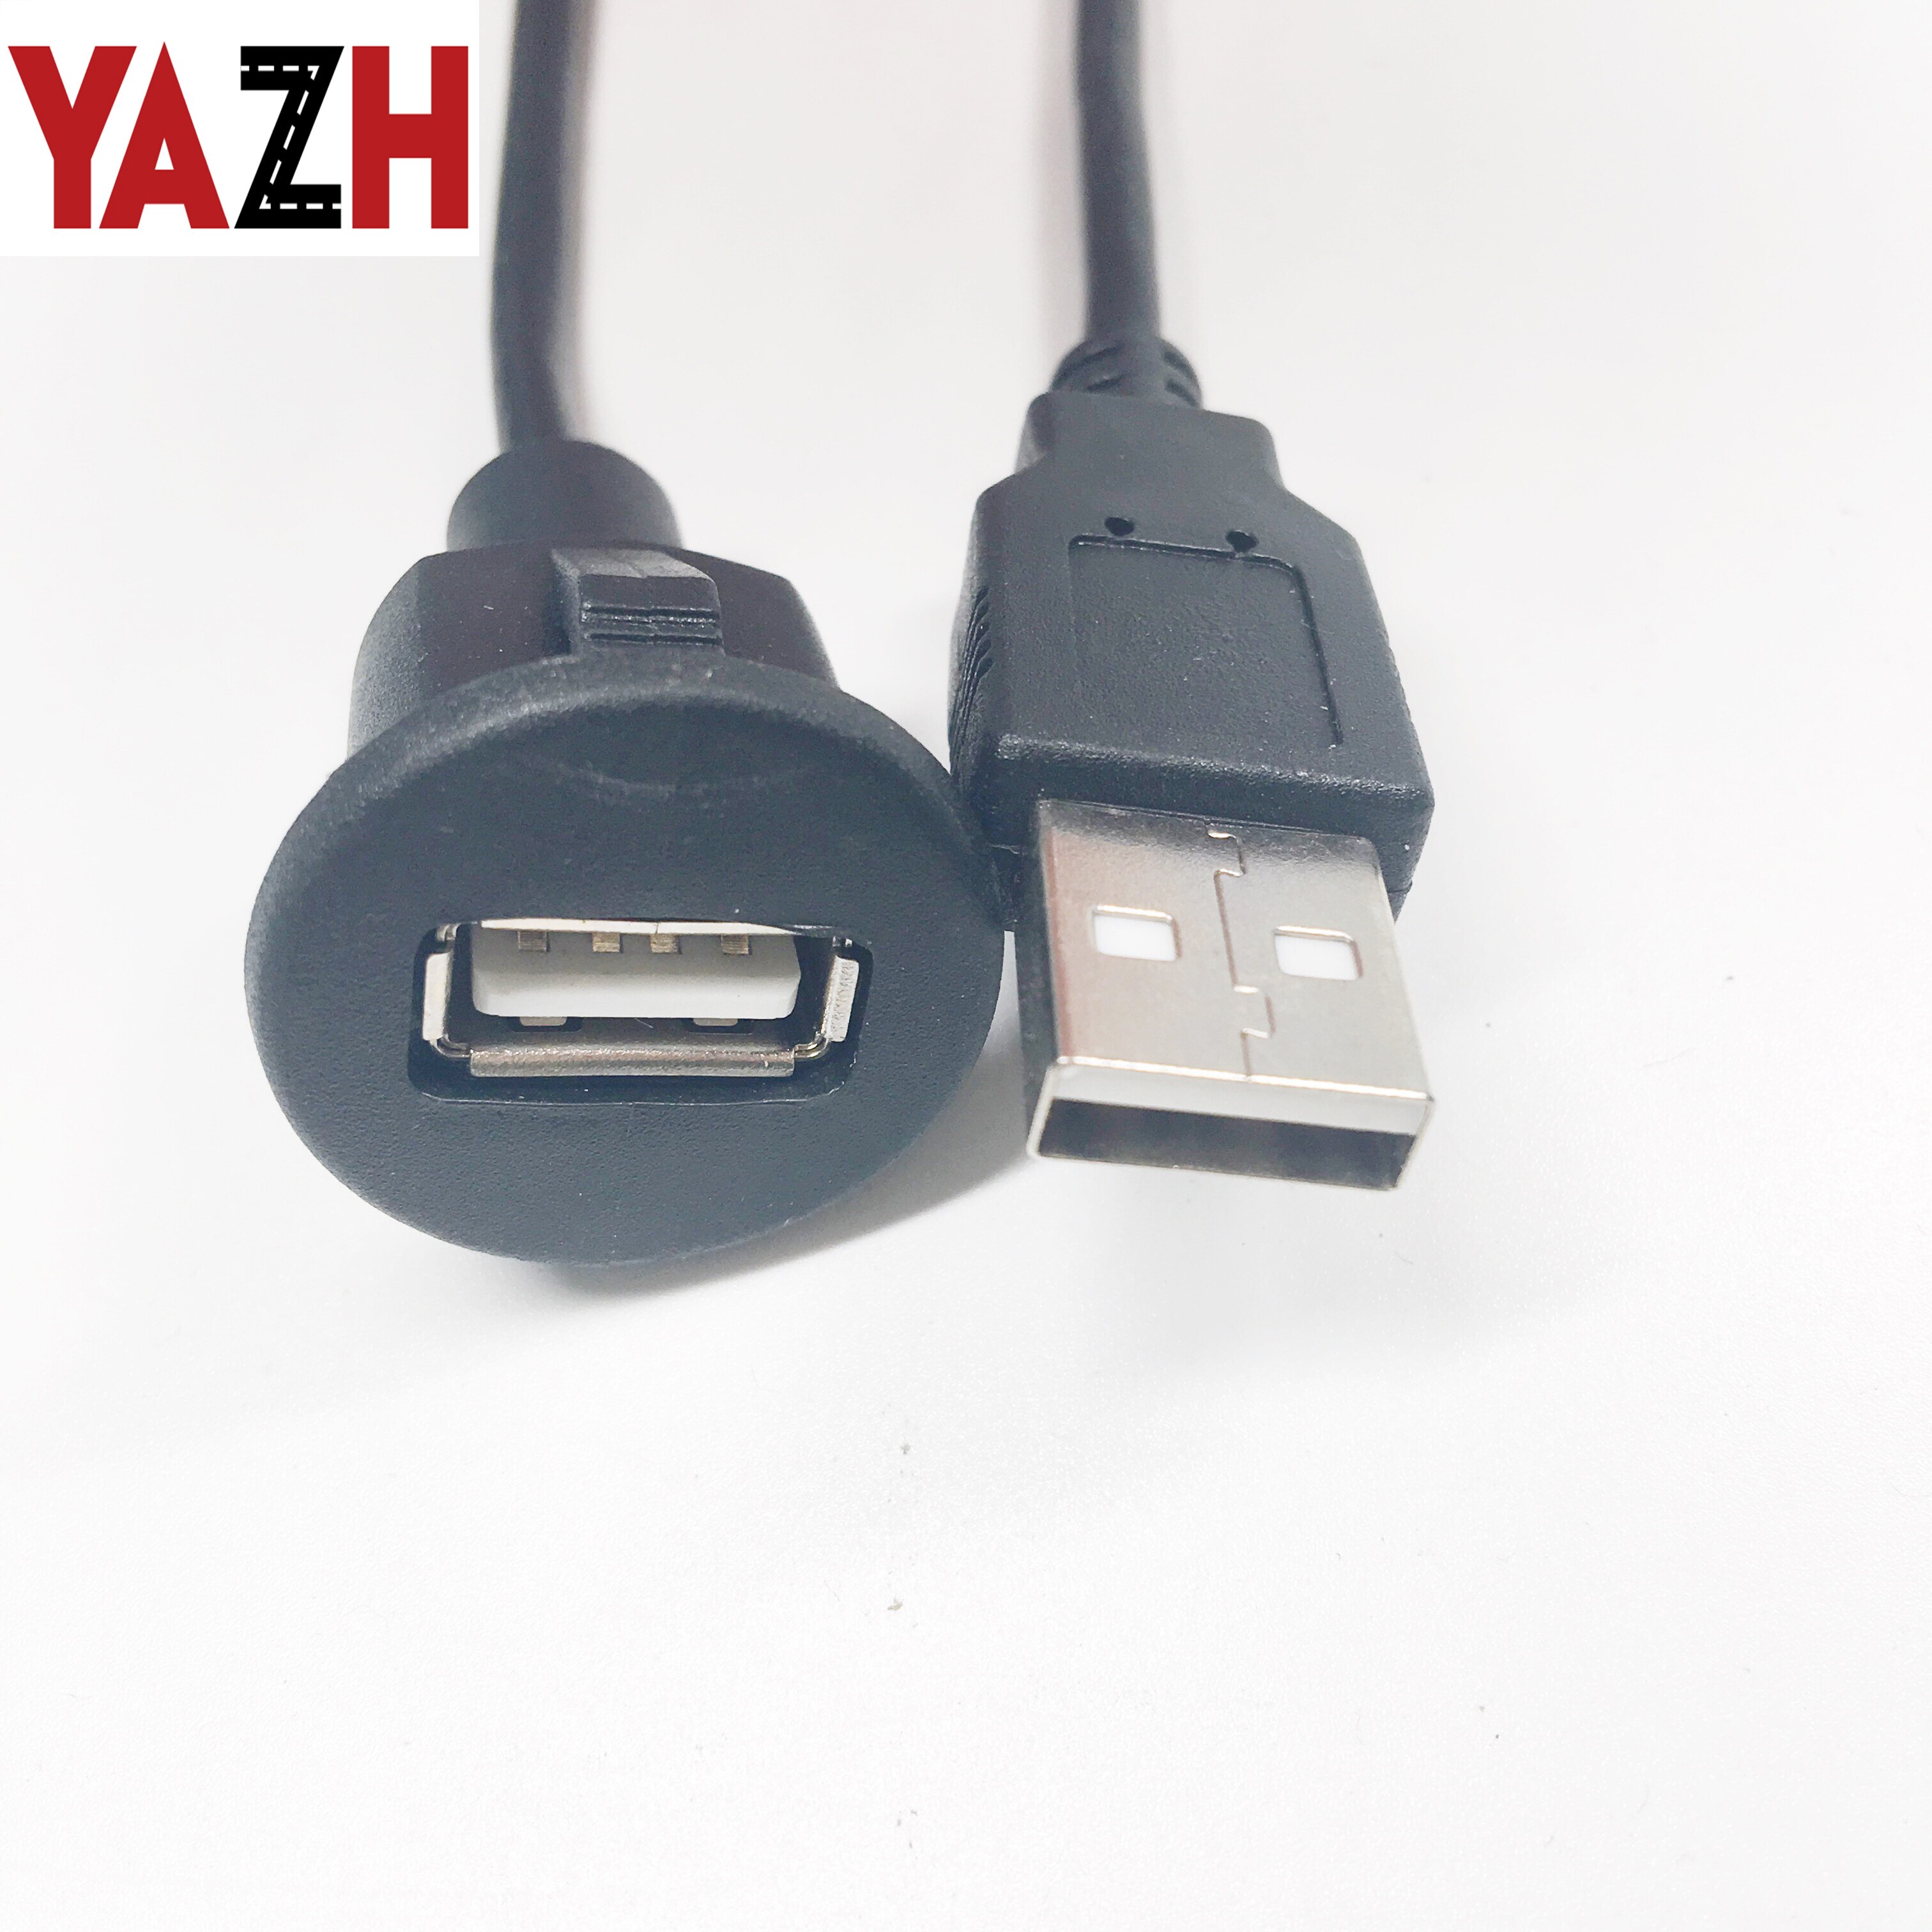 Yazh 1 M Usb Verlengkabel Usb 2.0 Kabel Voor Camera Pc PS4 Xbox Smart Tv High Speed Lader & data Usb 2.0 Kabel Extender